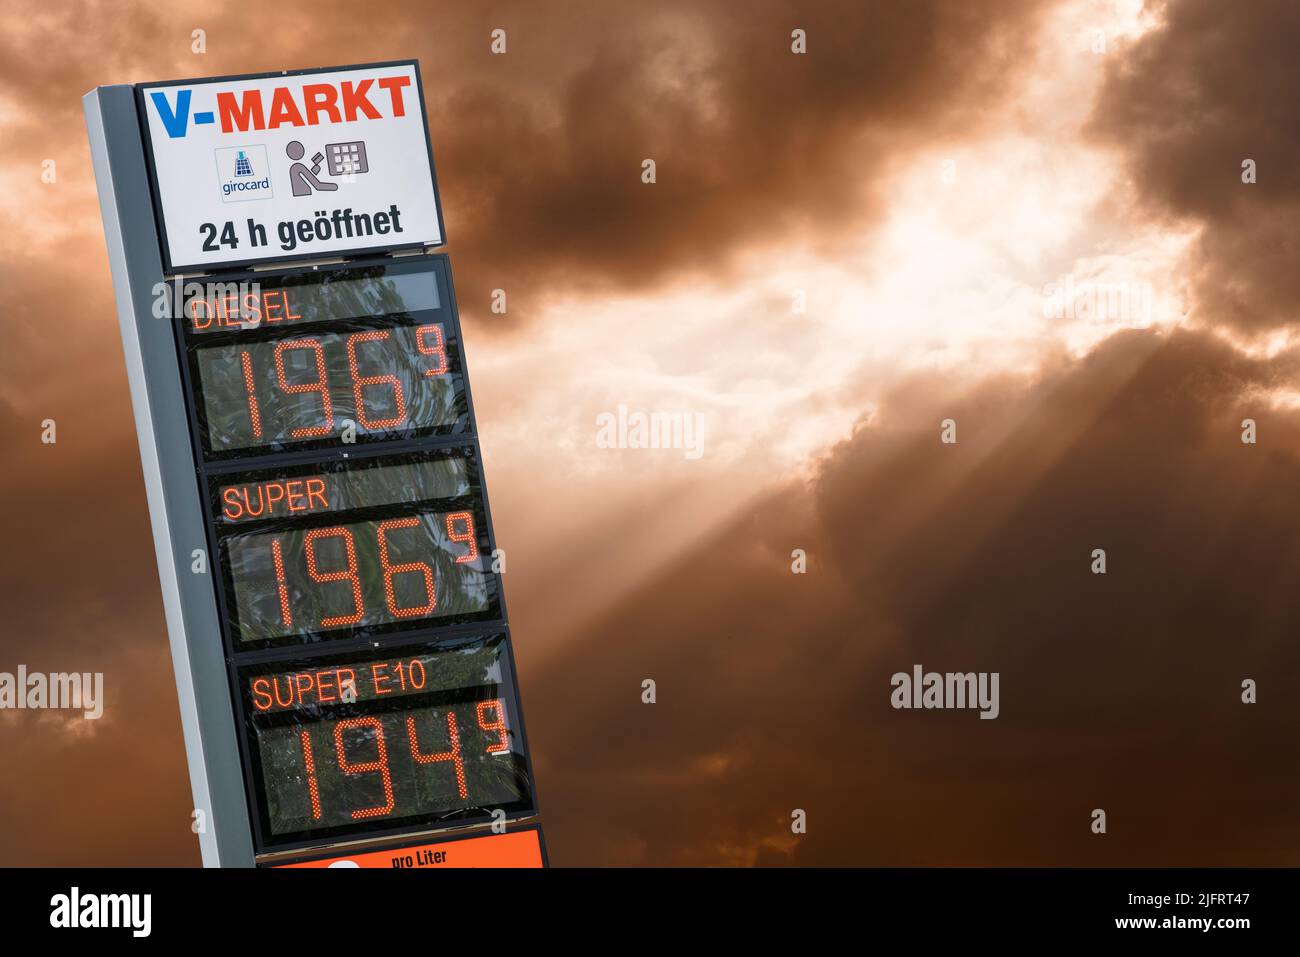 Preisanzeige an der Tankstelle am V-Markt a Schwabmünchen Foto Stock